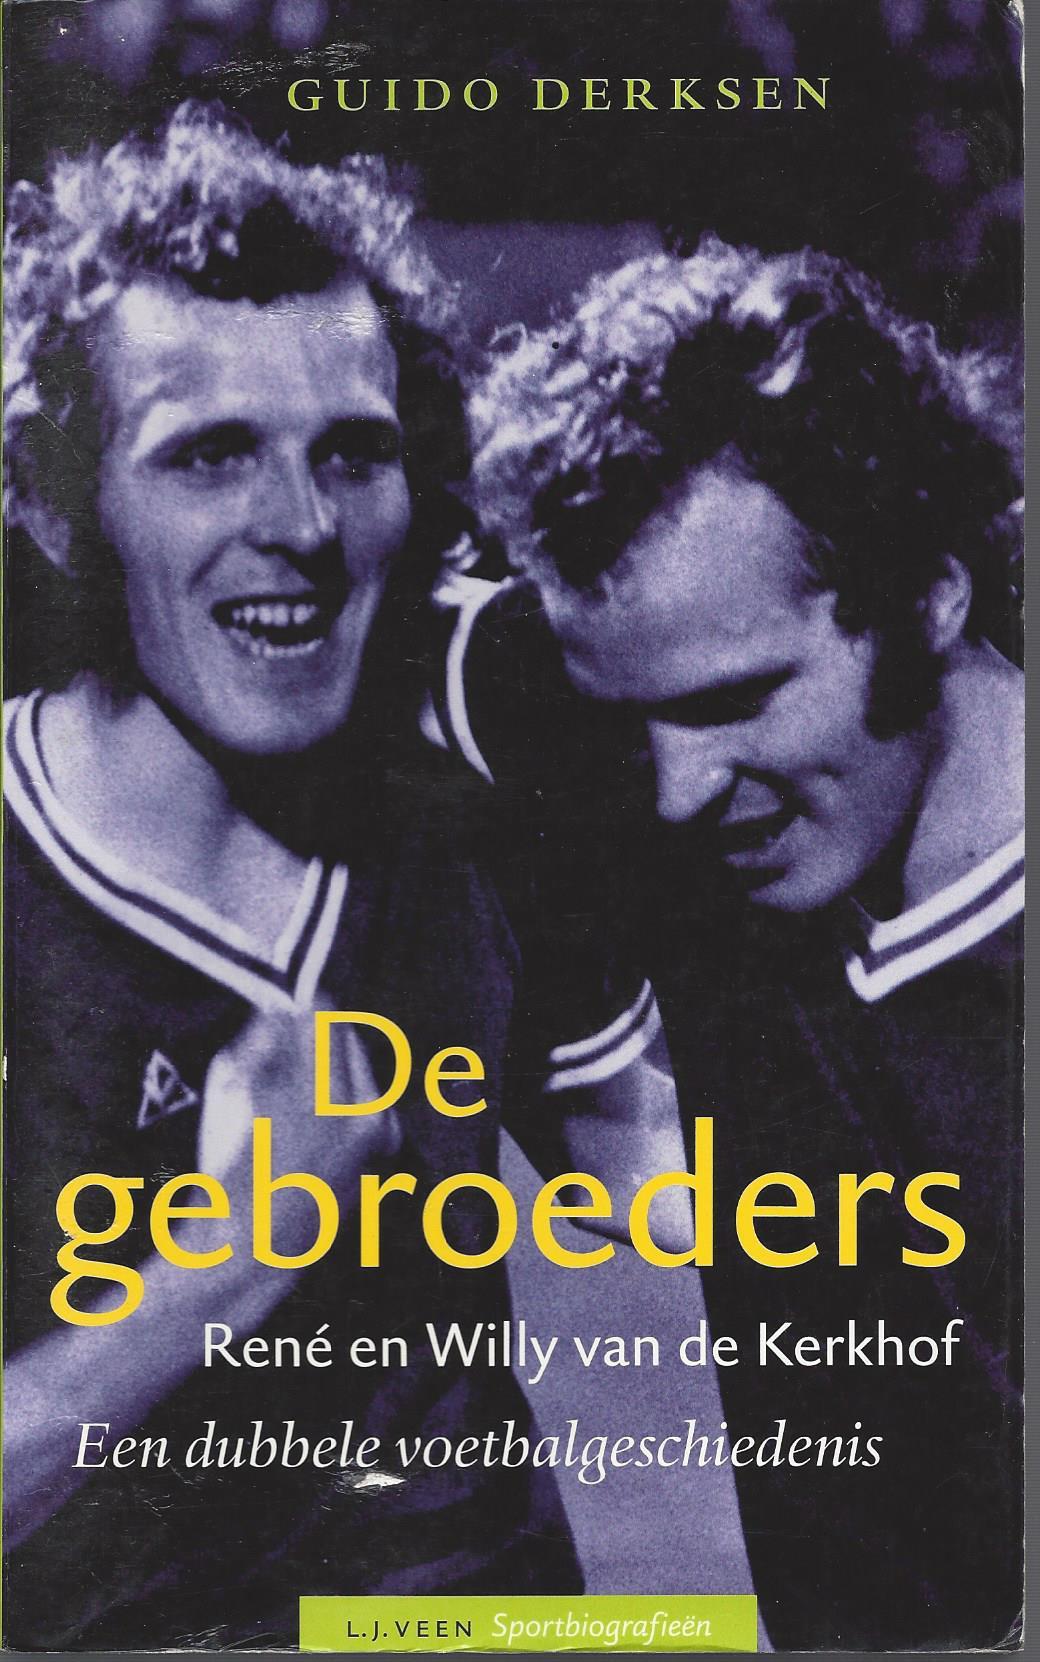 Derksen, Guido - De gebroeders René en Willy van de Kerkhof -Een dubbele voetbalgeschiedenis